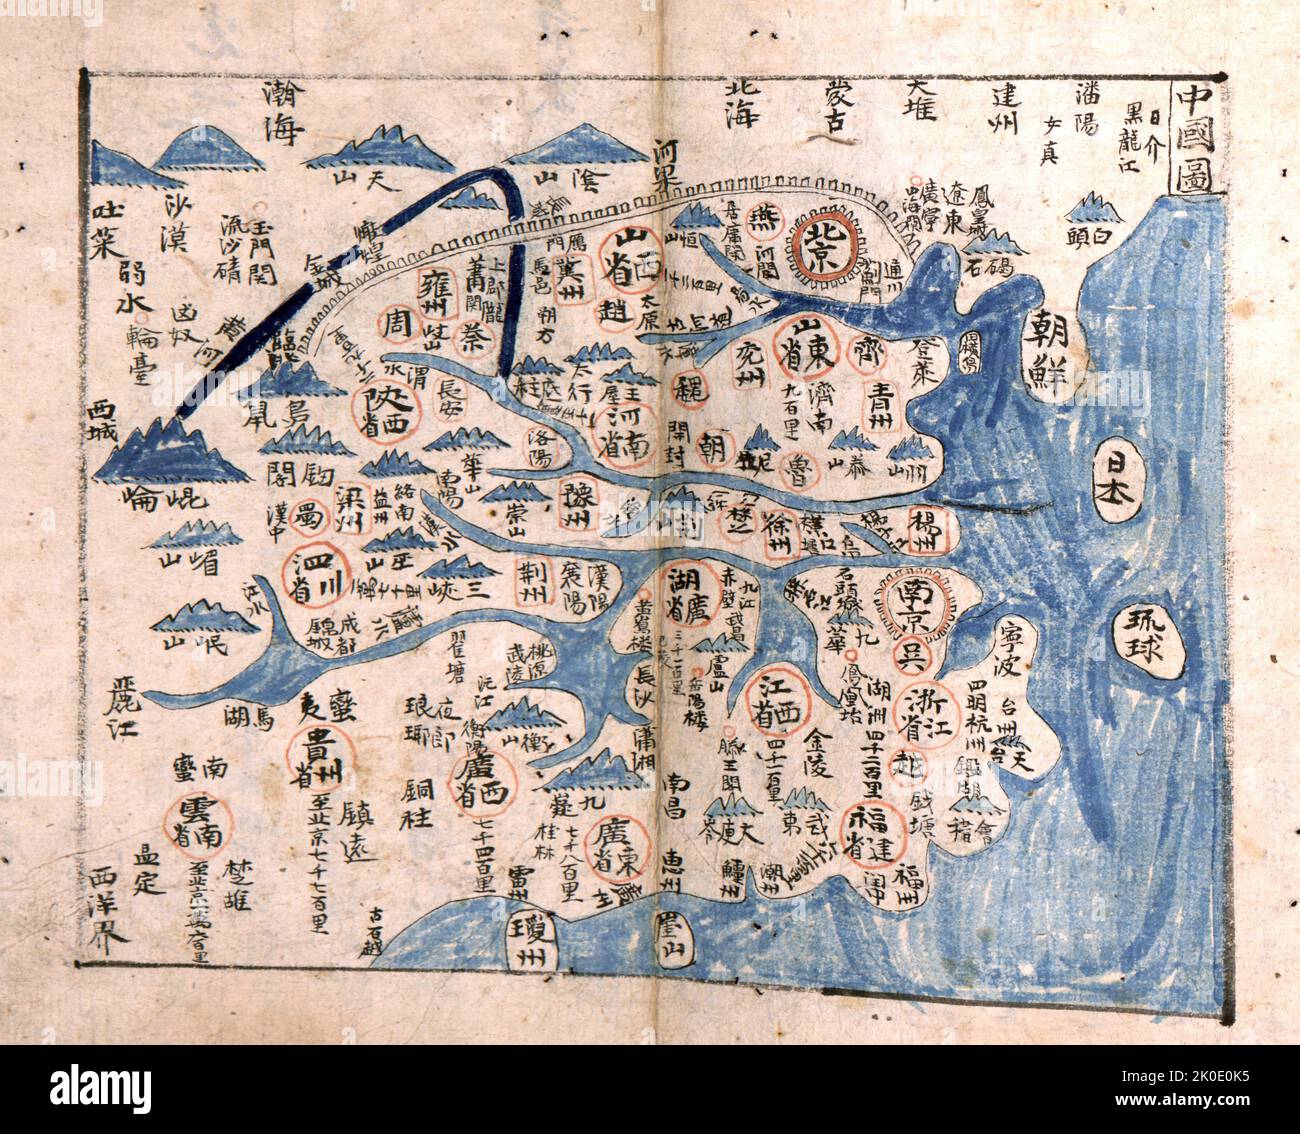 TAE Choson Chido. Joseon era mappa della Corea, c1874 Foto Stock